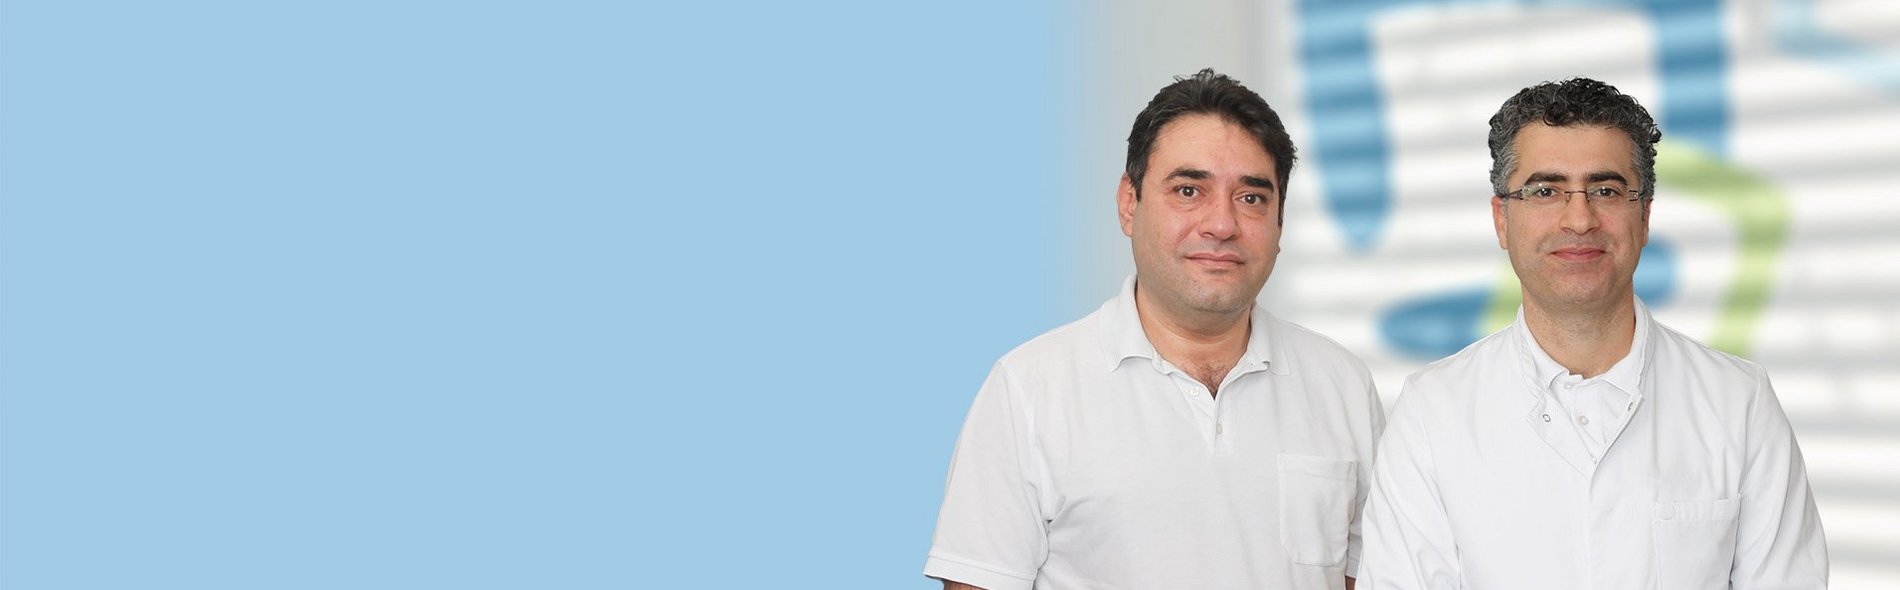 Walid Borhan und Hussien Ziedan, Fachärzte für Hals-Nasen-Ohren-Heilkunde